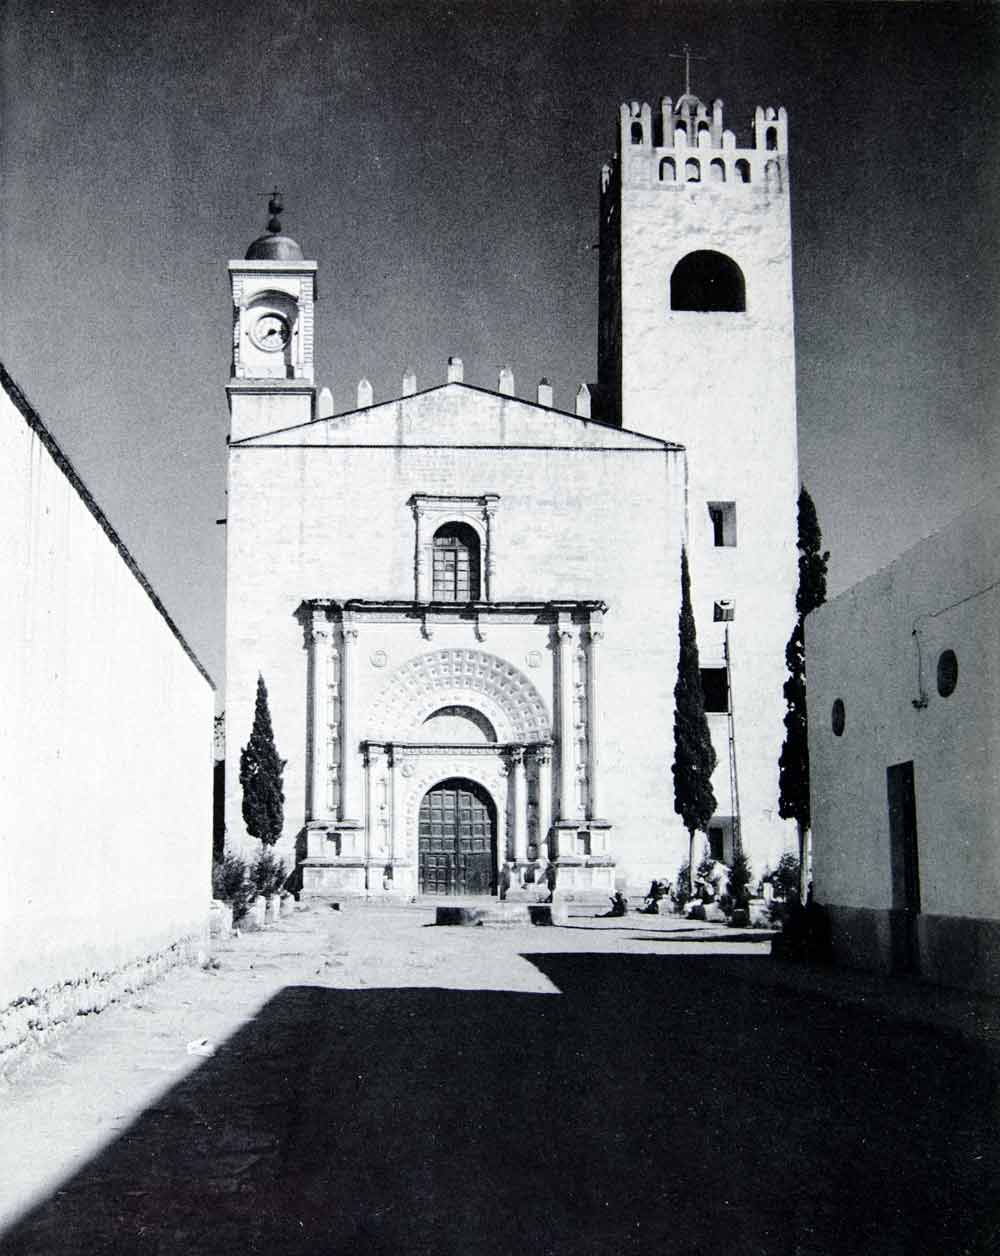 1945 Print San Augustin Monastery Acolman Mexico Sanctuary 16th Century F XGRC3